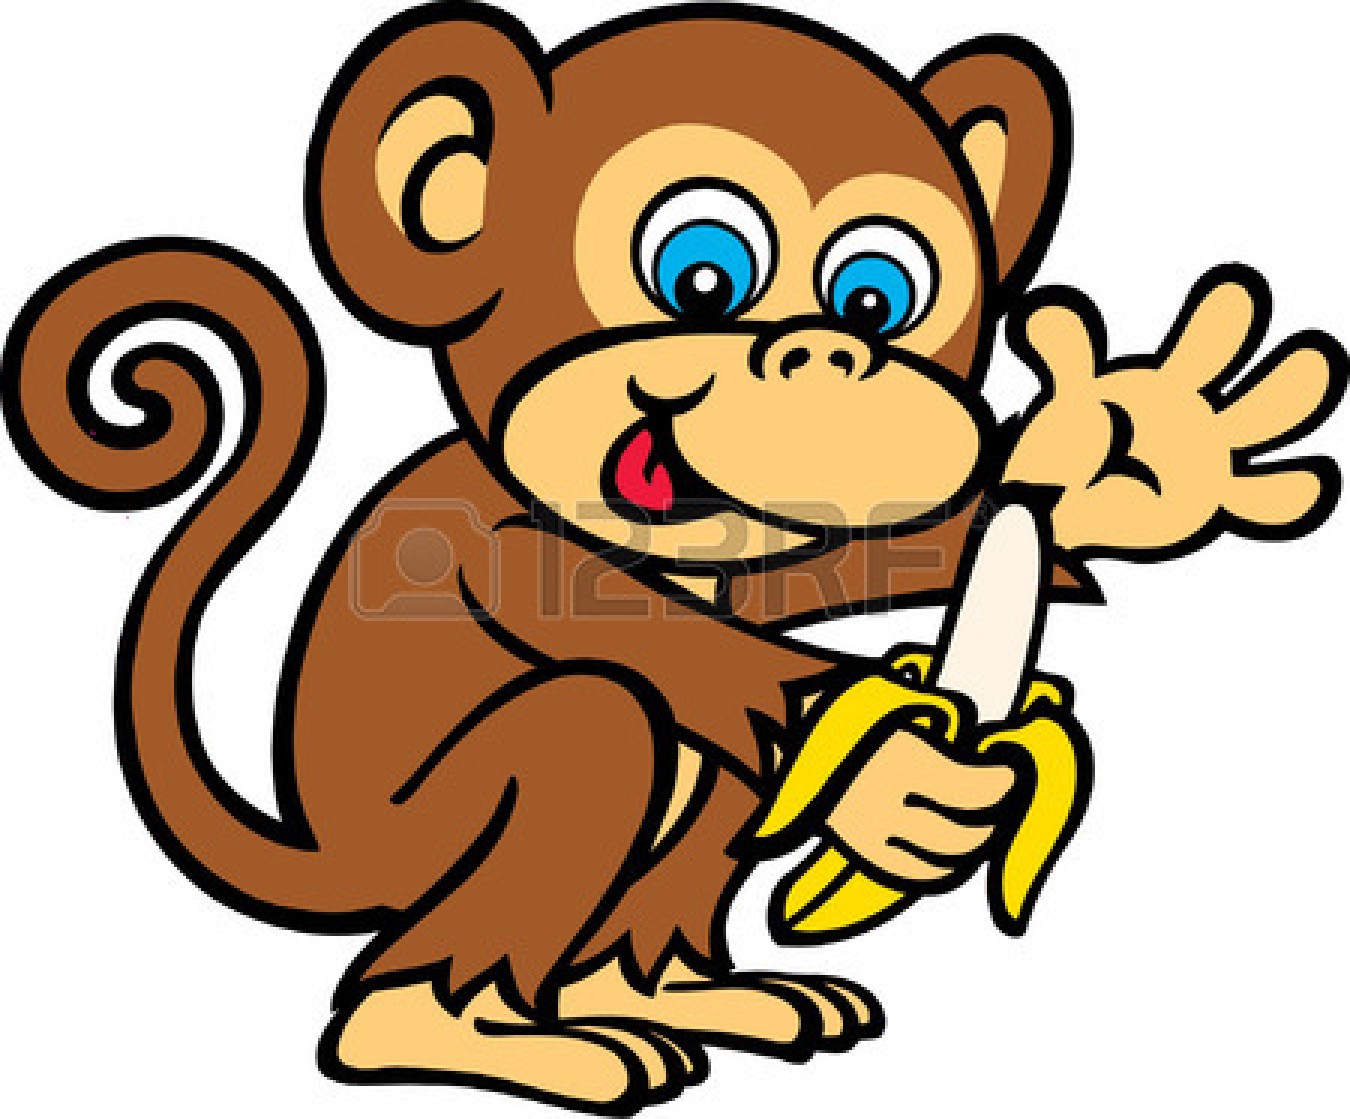 Monkey banana cartoon clipart